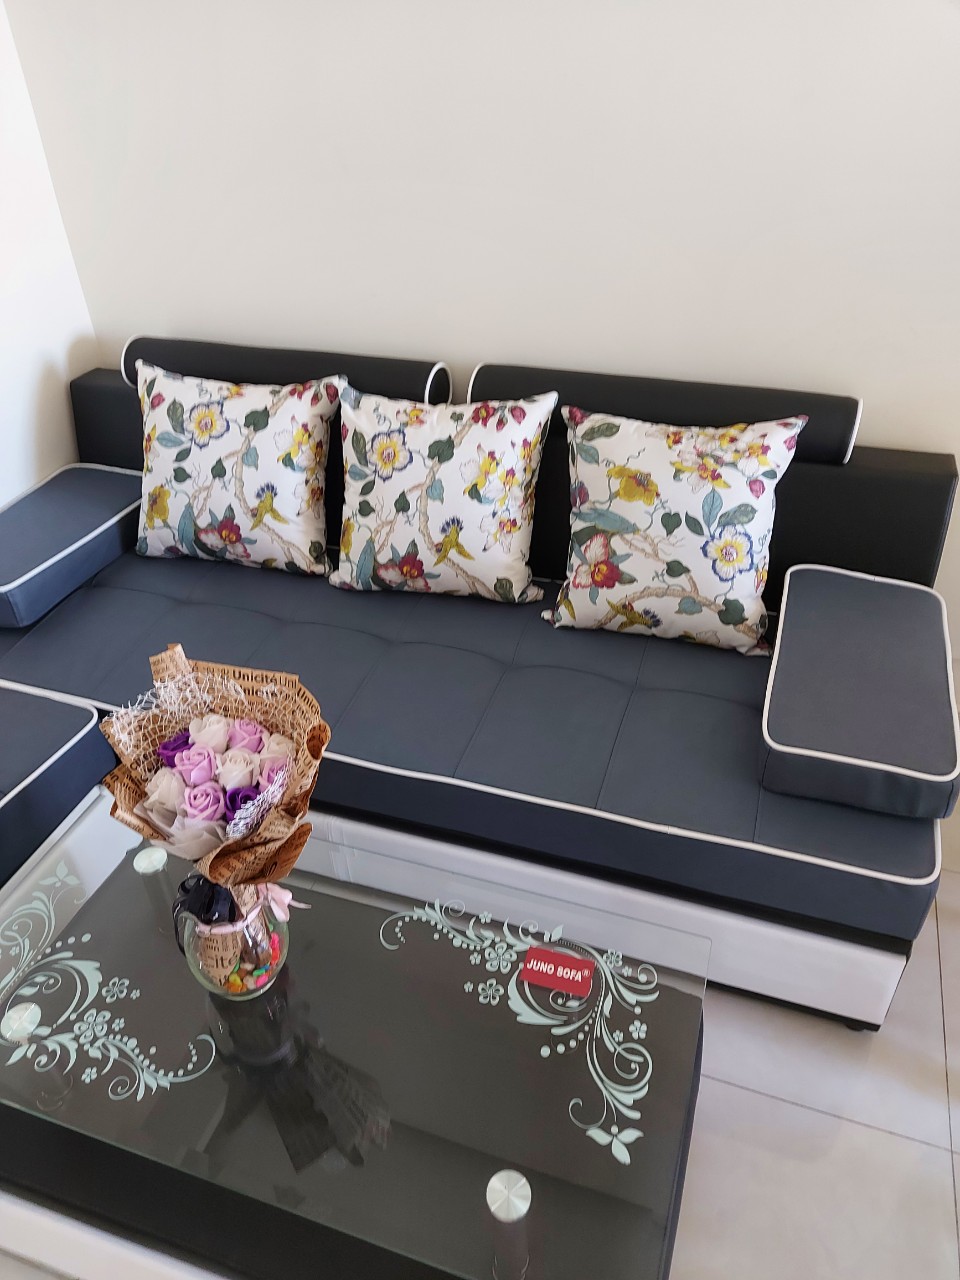 Hình ảnh Bộ sofa phòng Khách 2m2 dành cho chung cư Juno Sofa bao gồm đủ gối, đôn và bàn trà kính